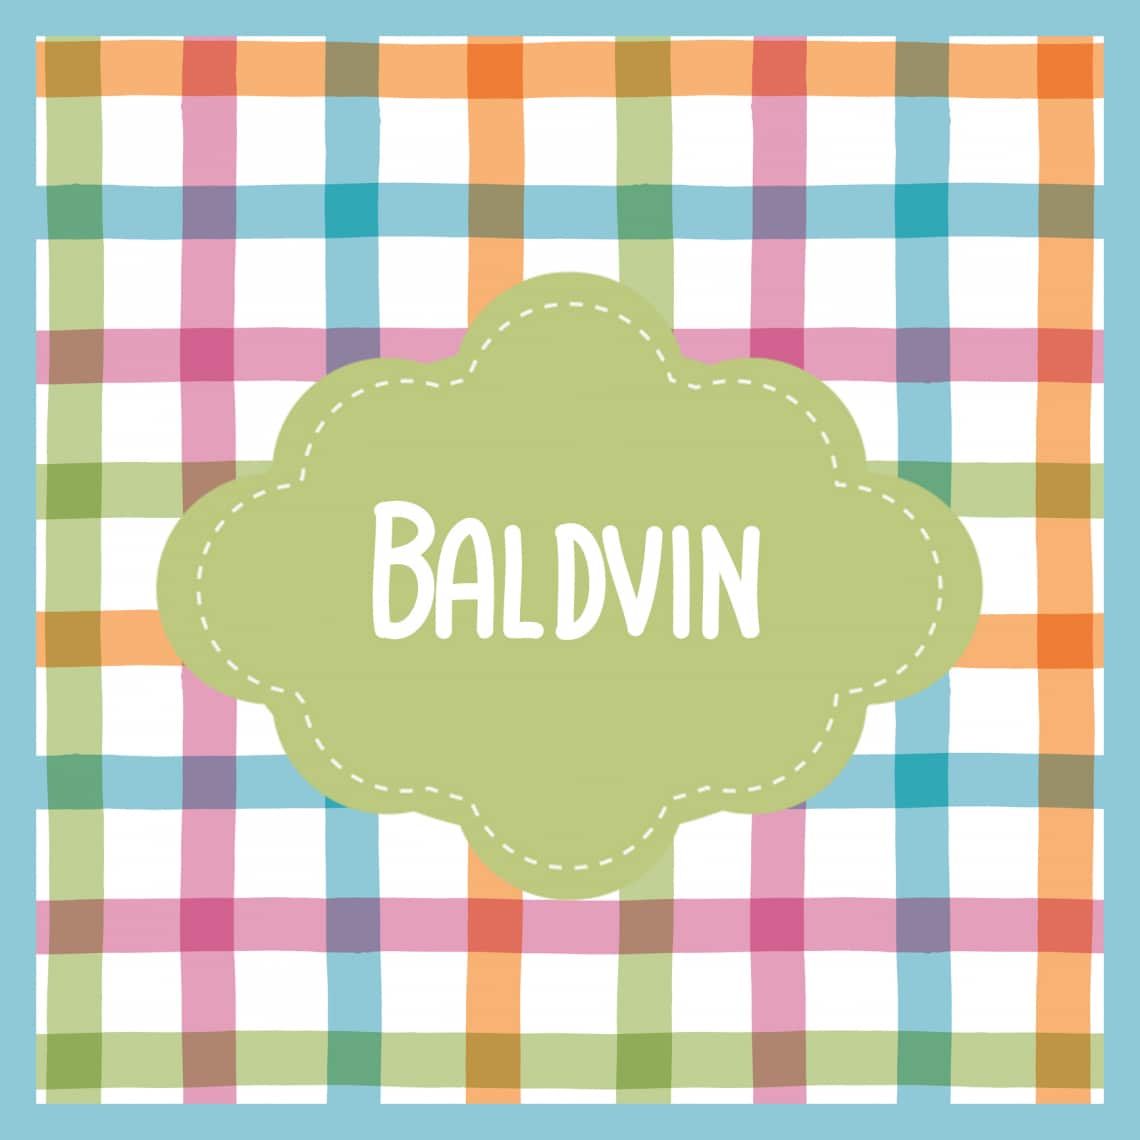 Baldvin